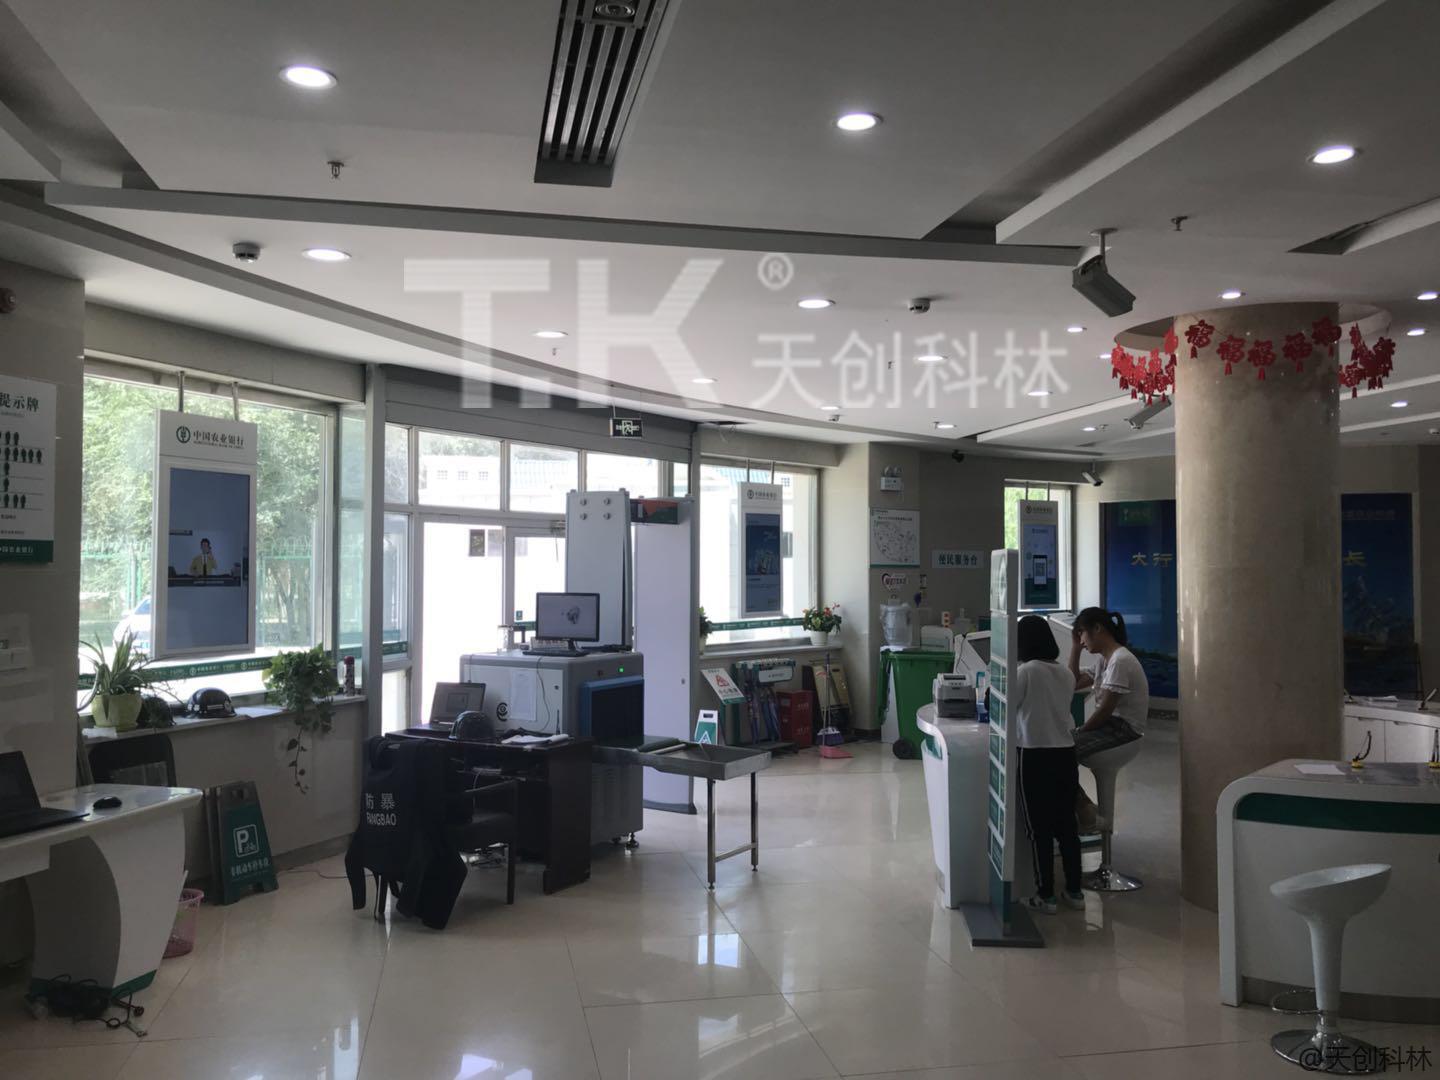 双屏广告机在中国农业银行股份有限公司图木舒克市兵团支行的应用